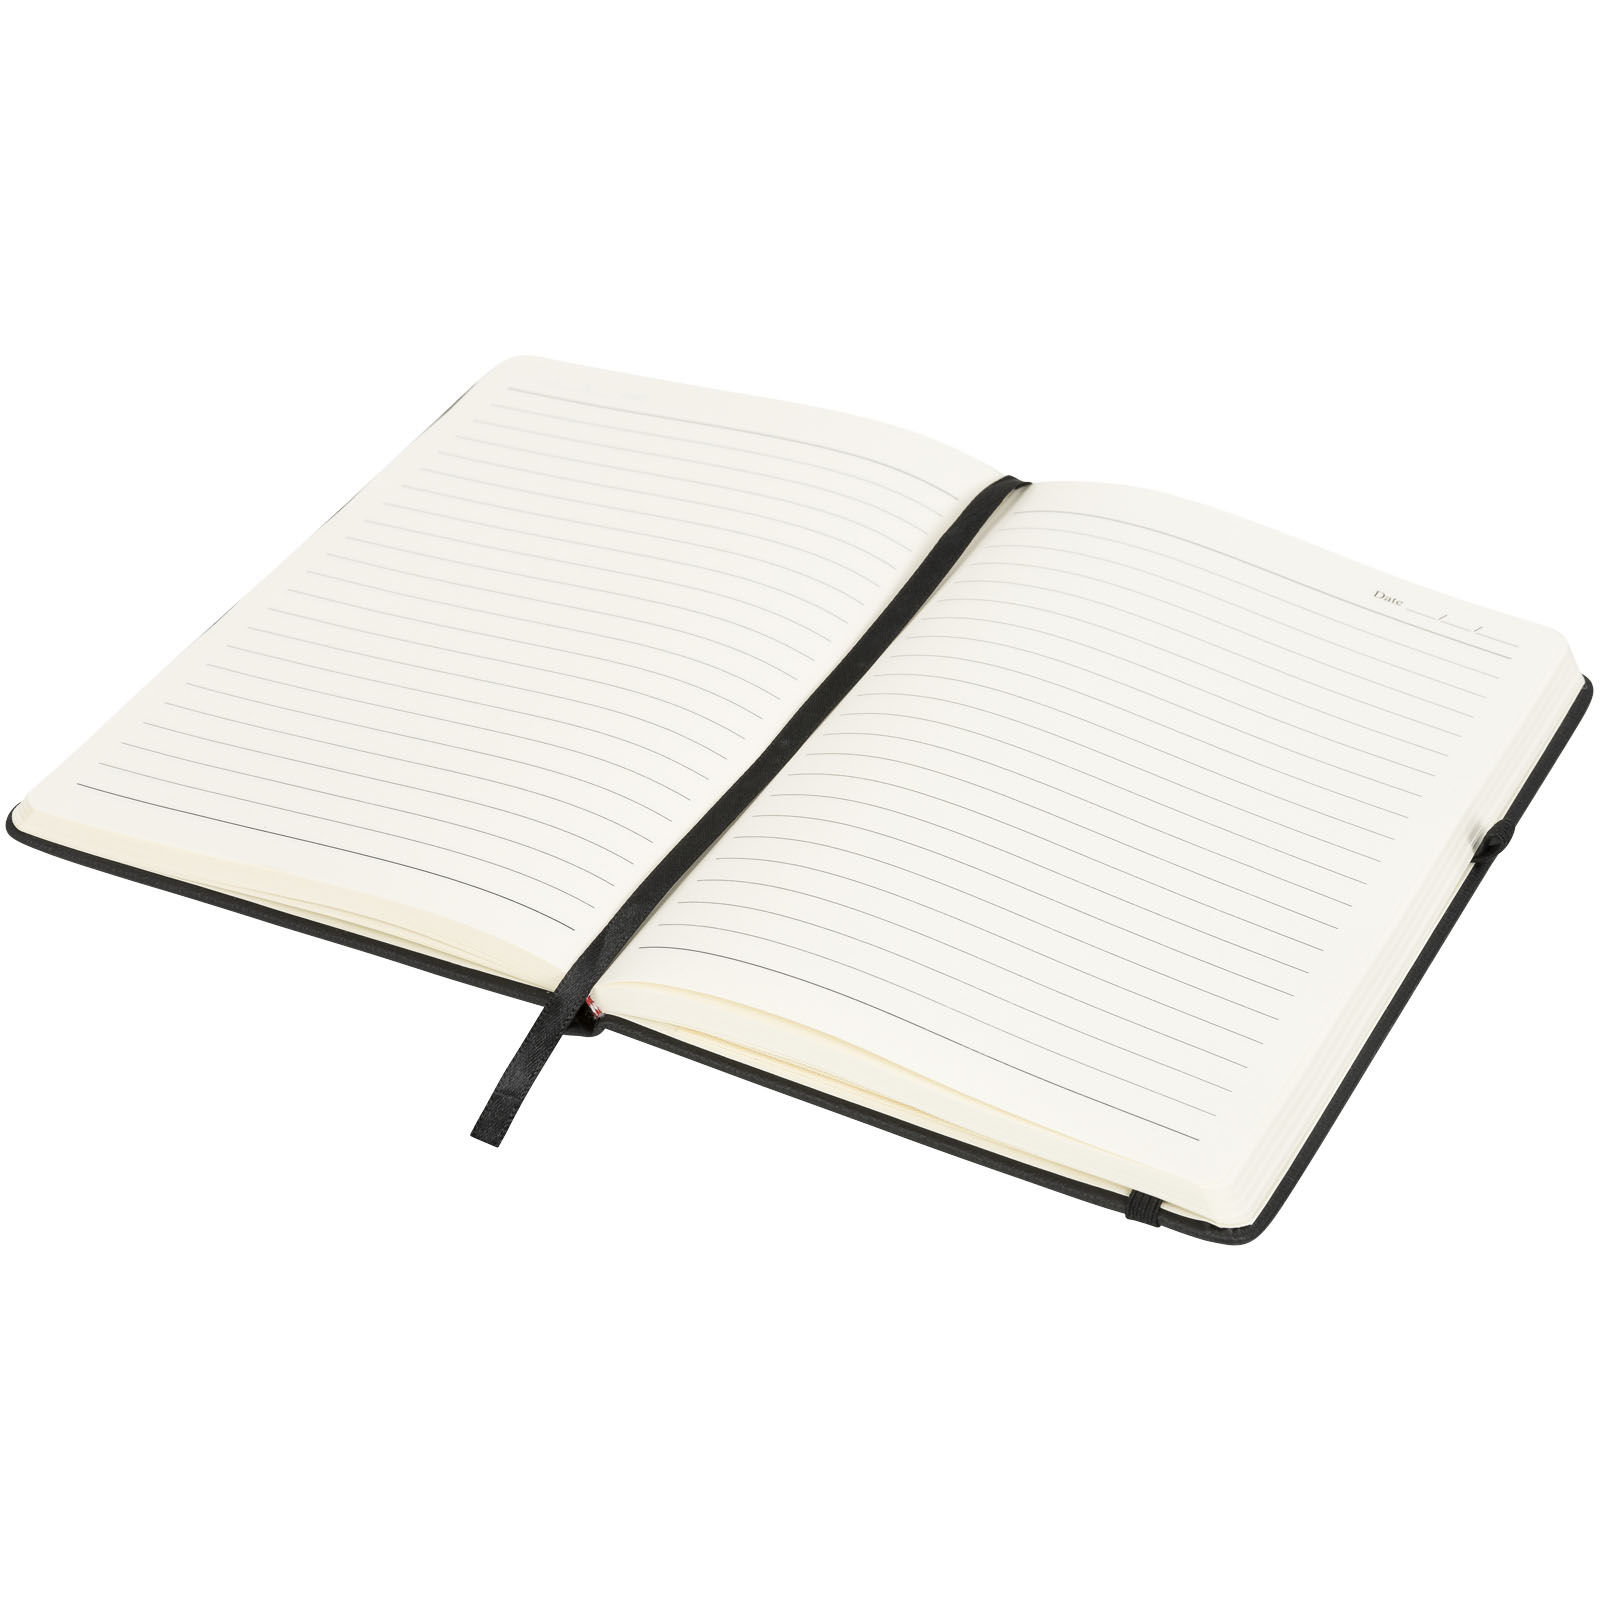 Advertising Hard cover notebooks - Rivista medium notebook - 4